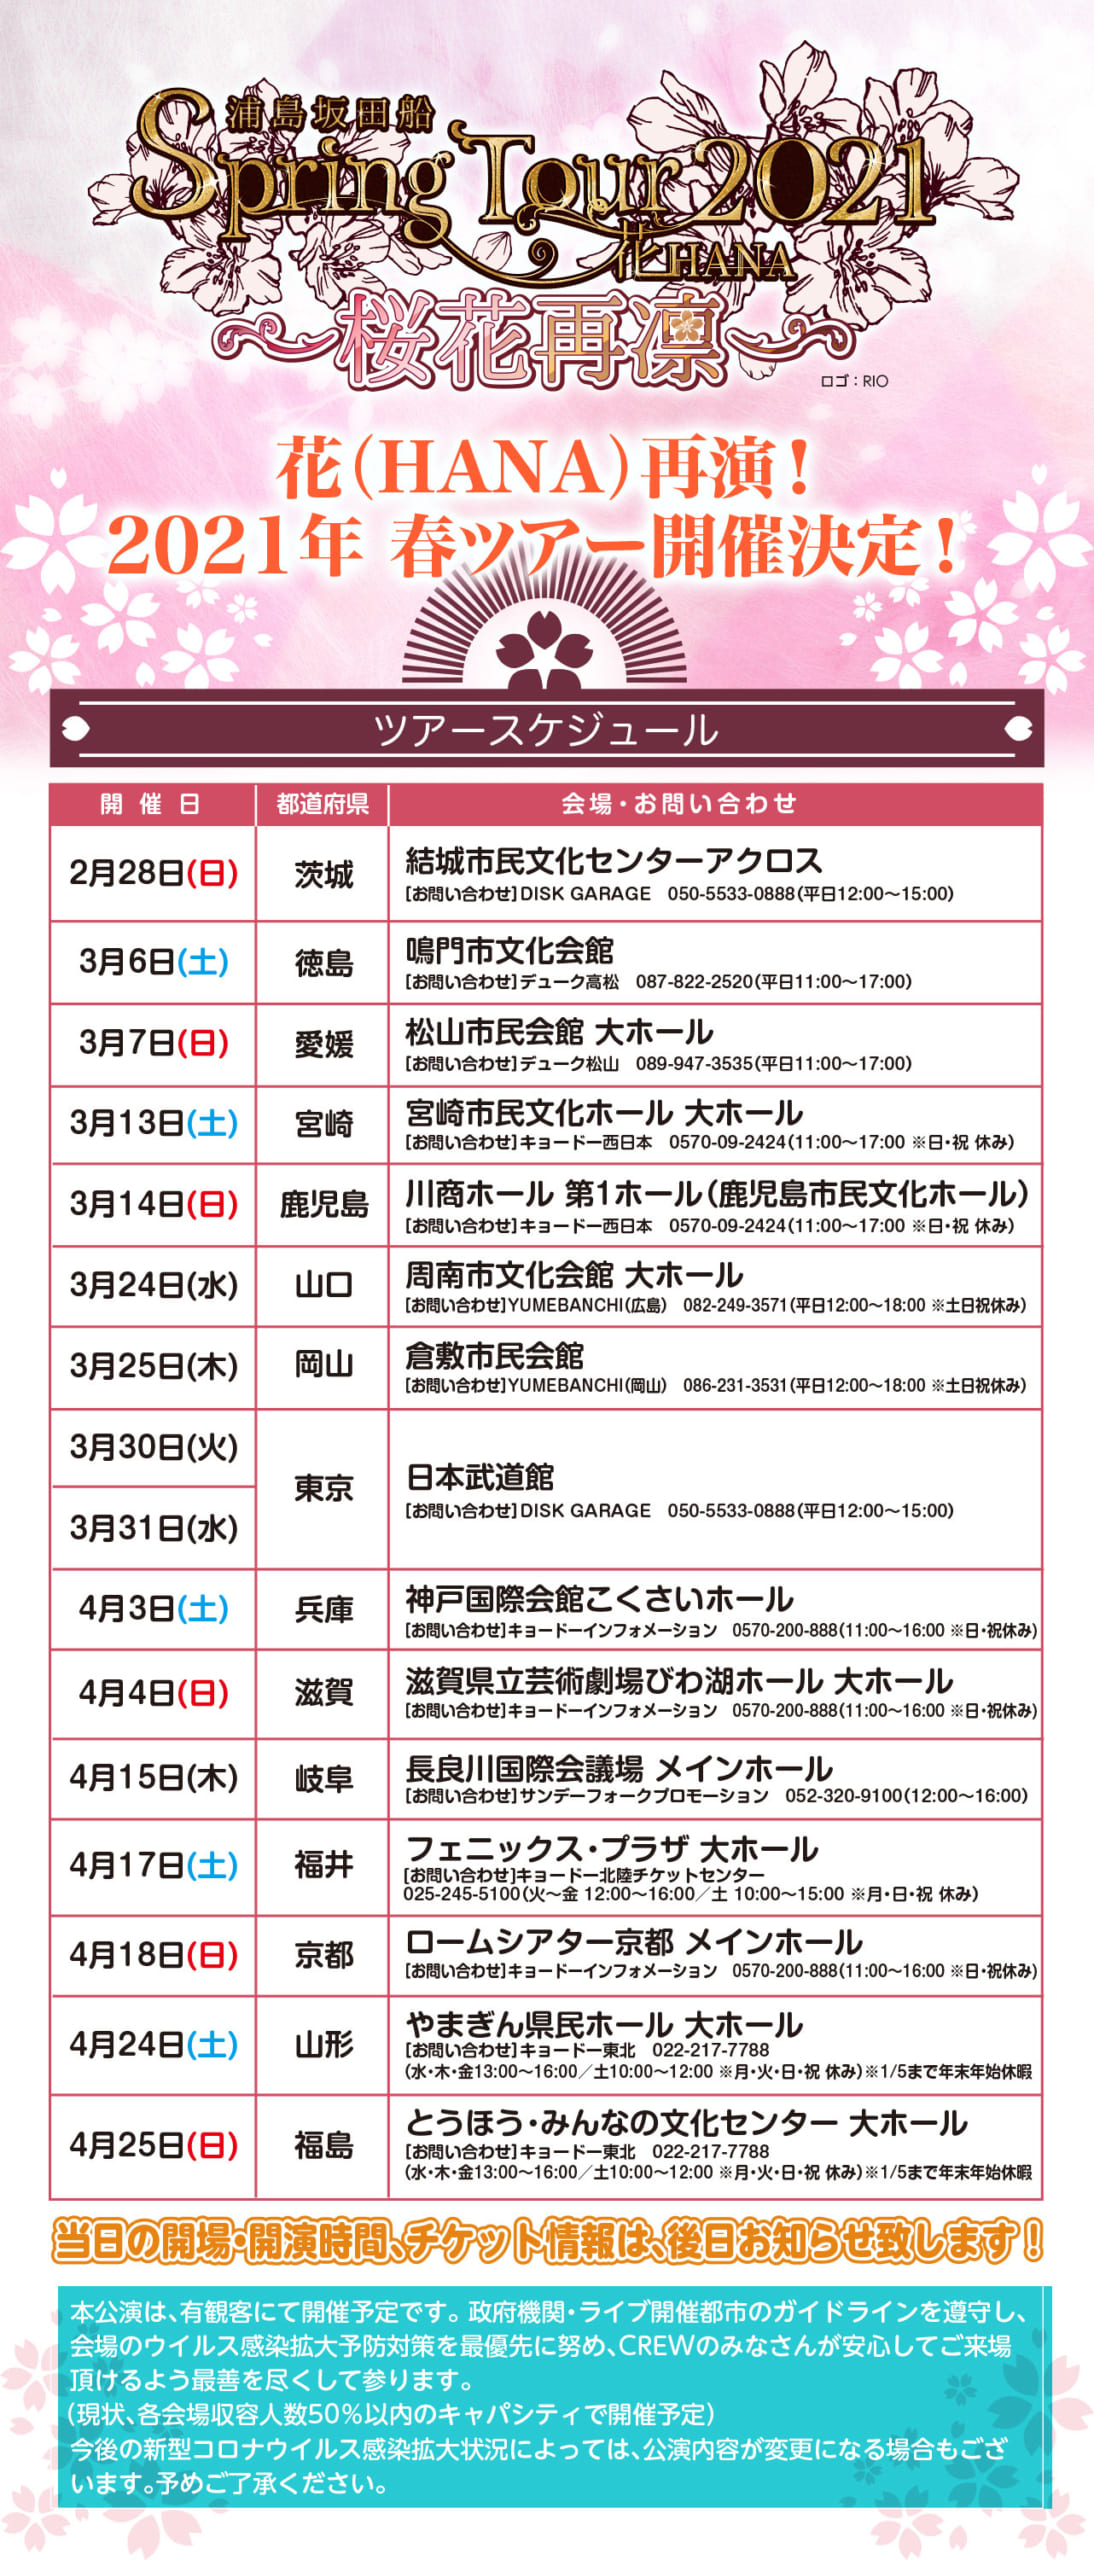 「浦島坂田船」2021年春ツアー開催決定！全国15カ所を2月より巡回